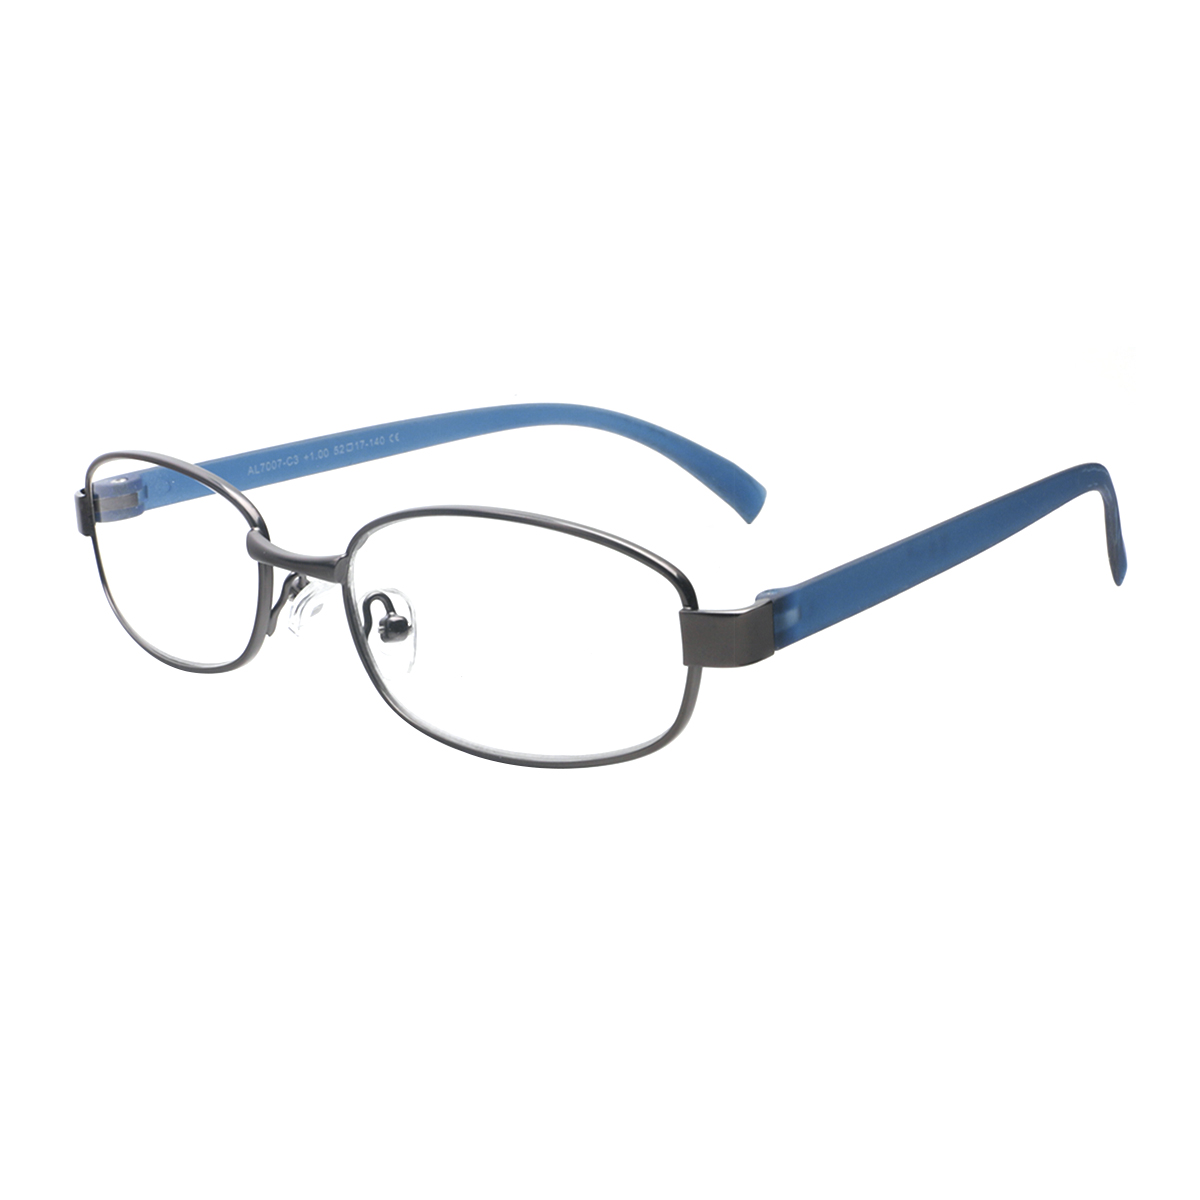 Tylis - Oval Blue Reading Glasses for Men & Women